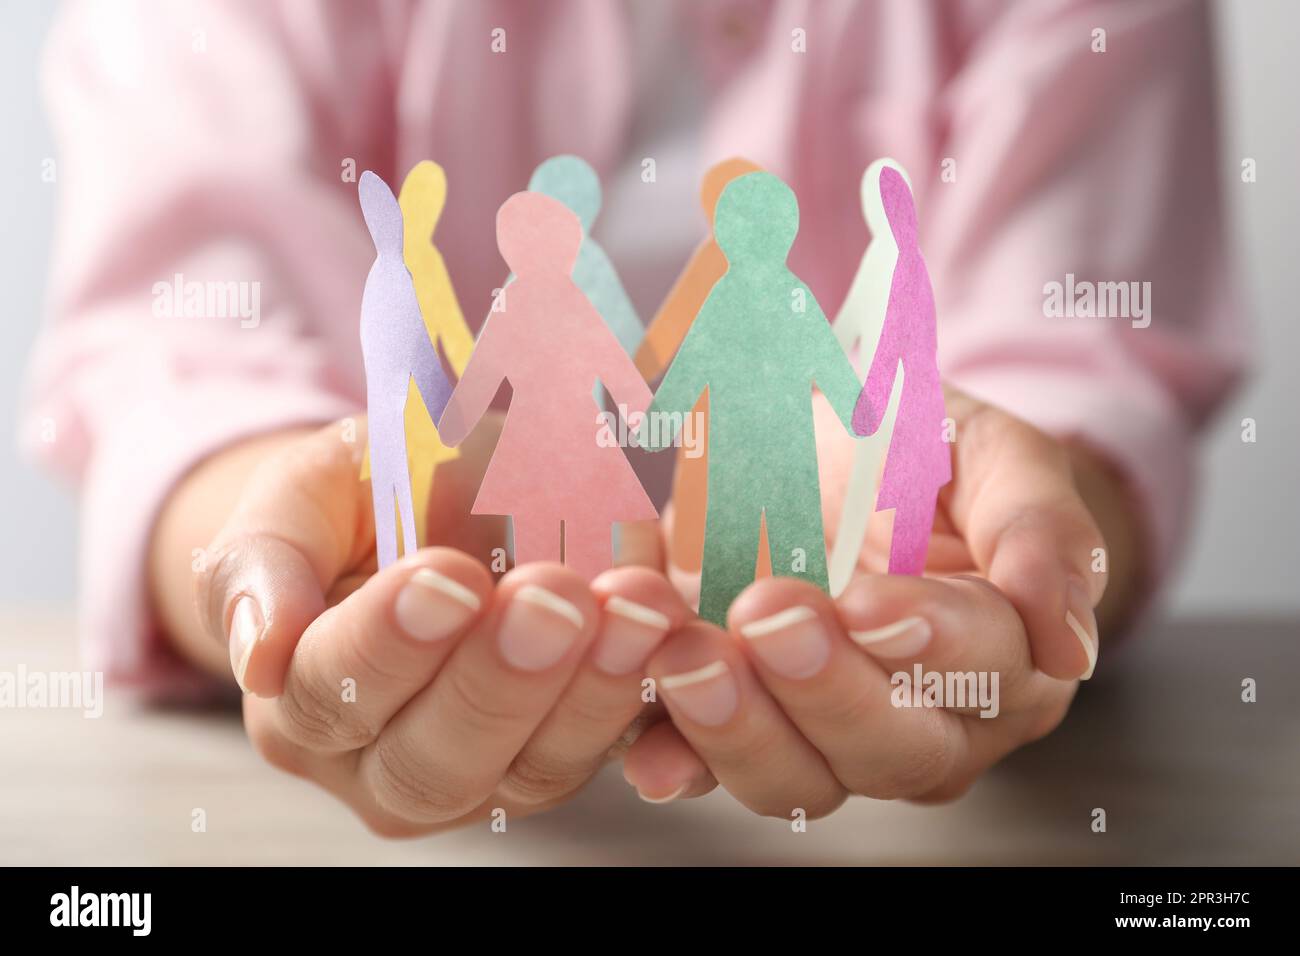 Eine Frau, die Papiermenschen am Tisch hält, Nahaufnahme. Diversitäts- und Integrationskonzept Stockfoto